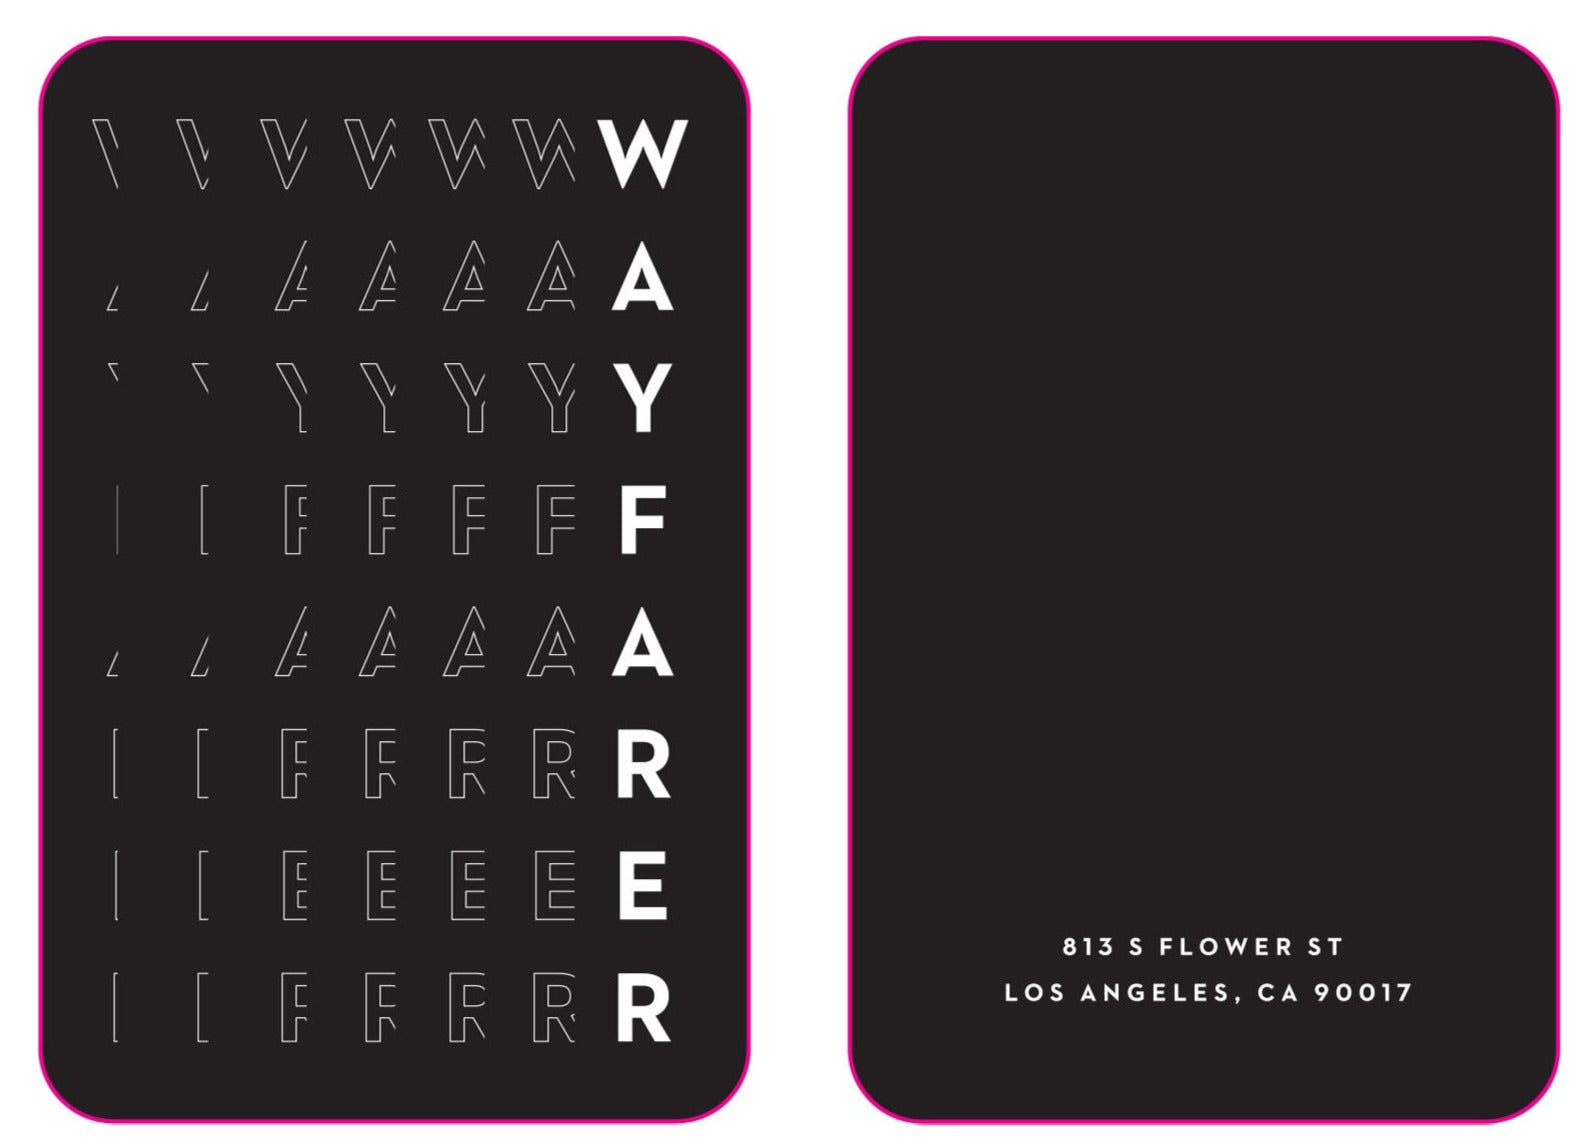 Wayfarer DTLA mf1k RFID Key Cards (500 cards per box / $150 per box)